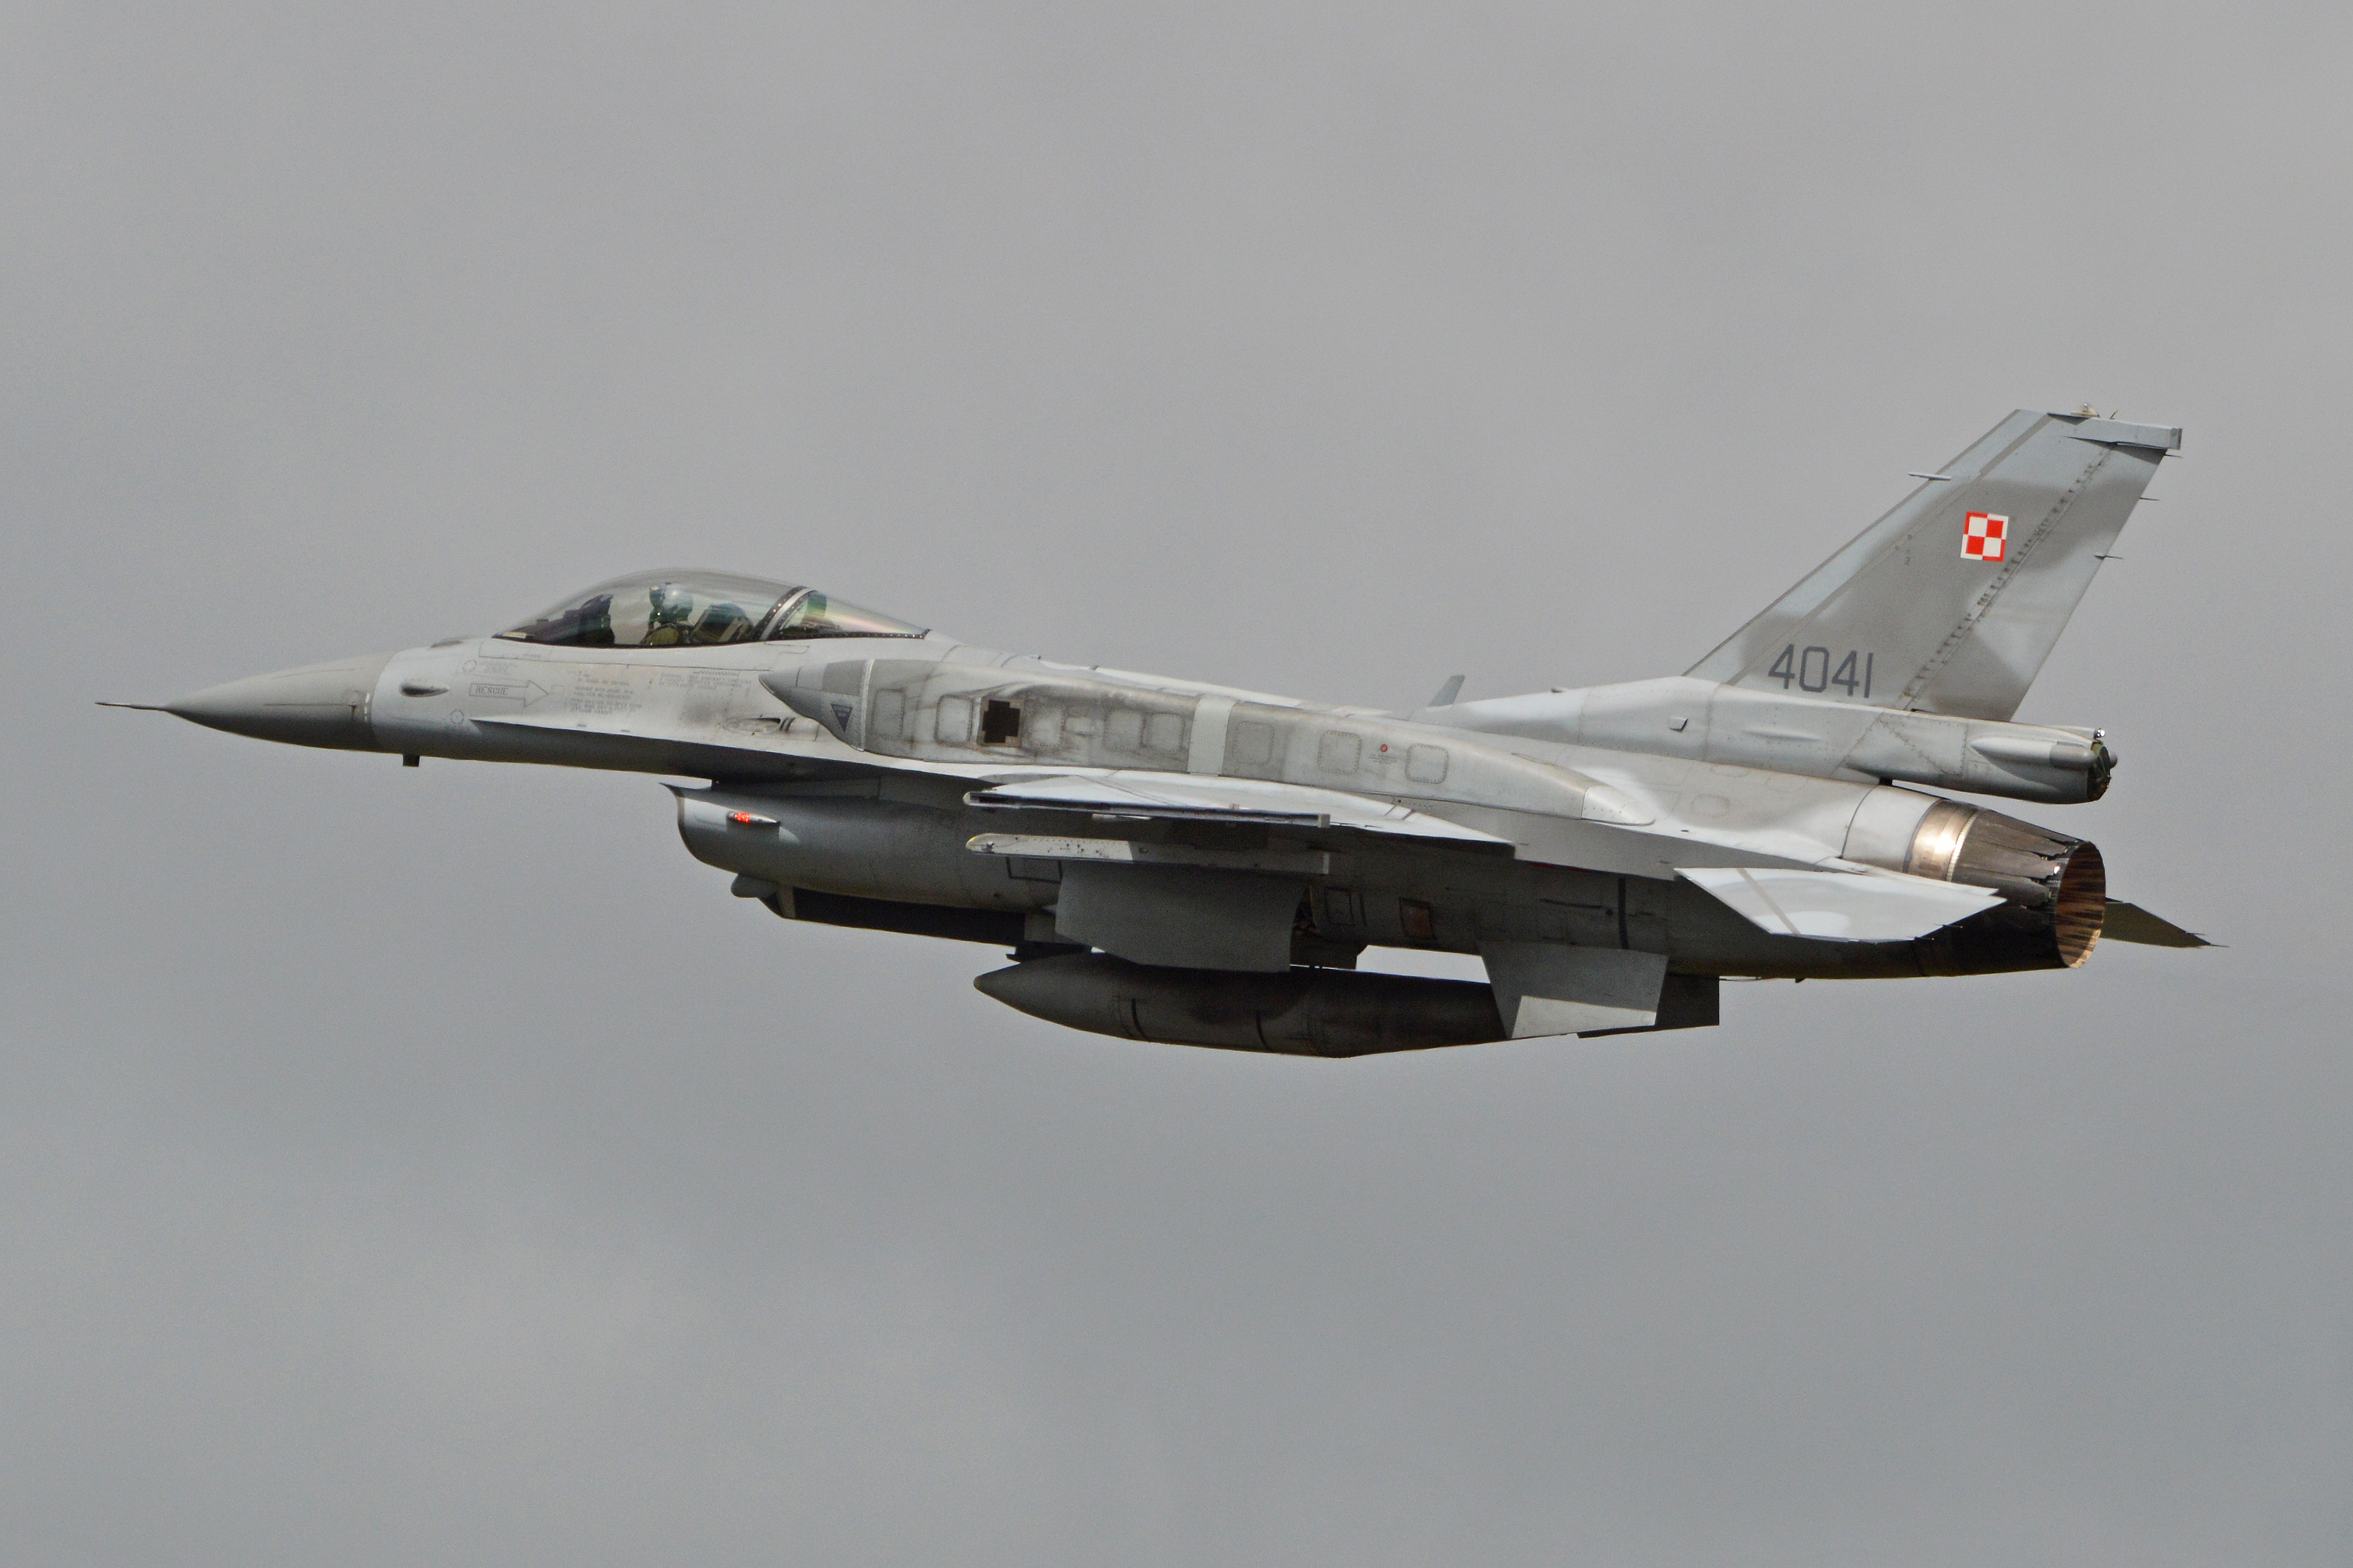 Plik:General Dynamics F-16C '4041'.jpg – Wikipedia, wolna encyklopedia